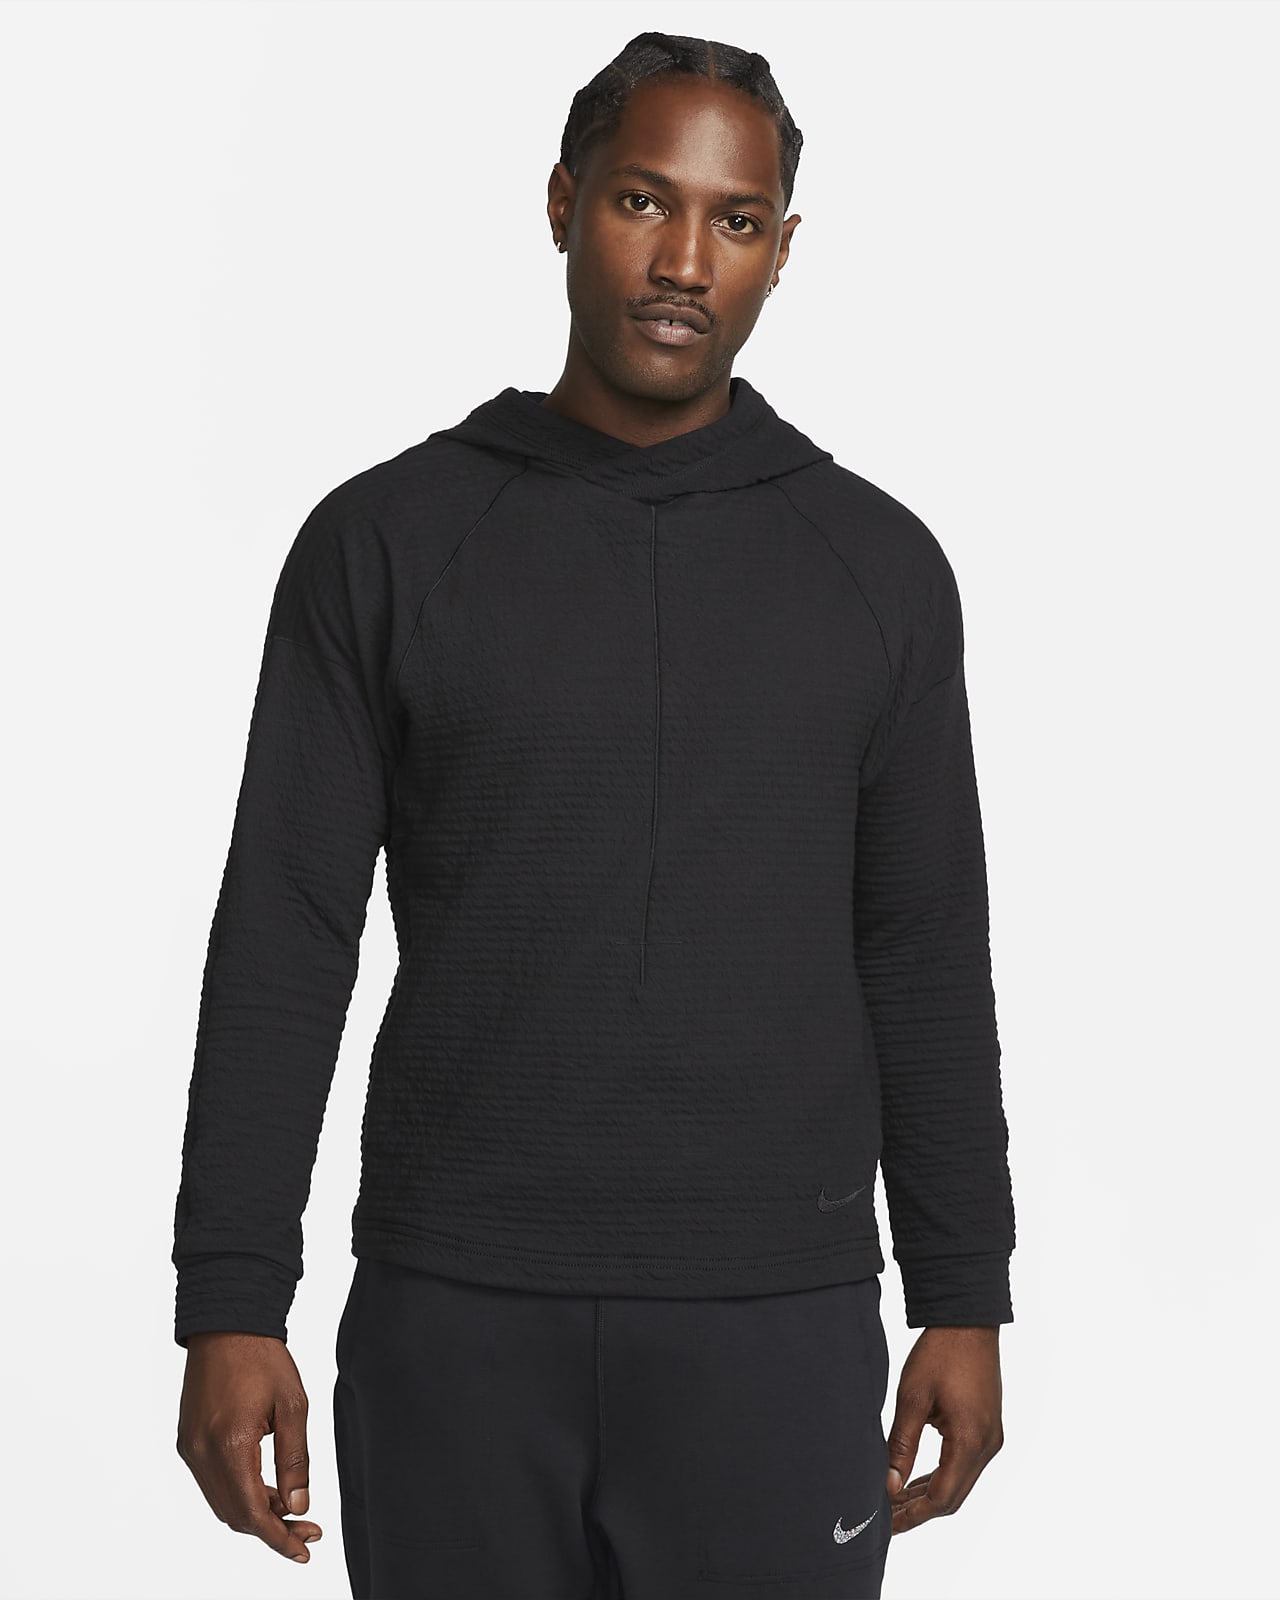 Nike Yoga Dri-FIT pullover